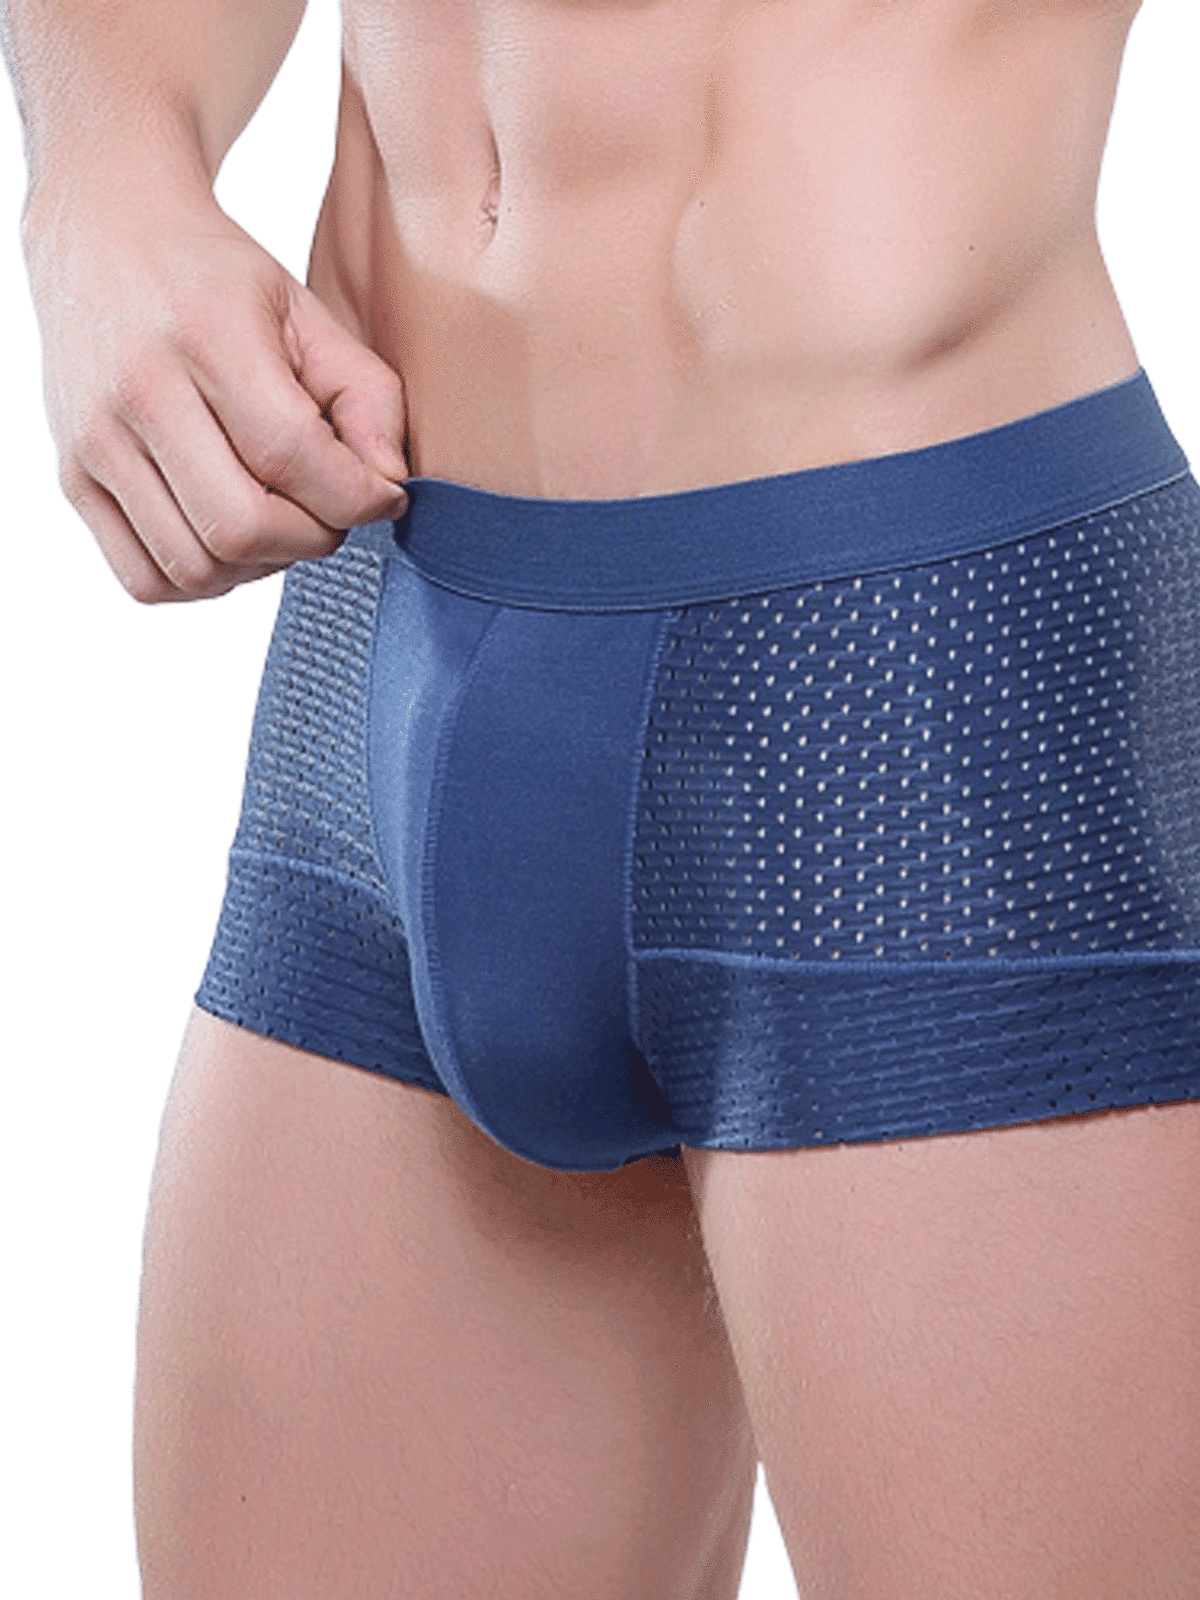 Mens boy Breathable Underwear Boxer Briefs Shorts Bulge Pouch Underpants